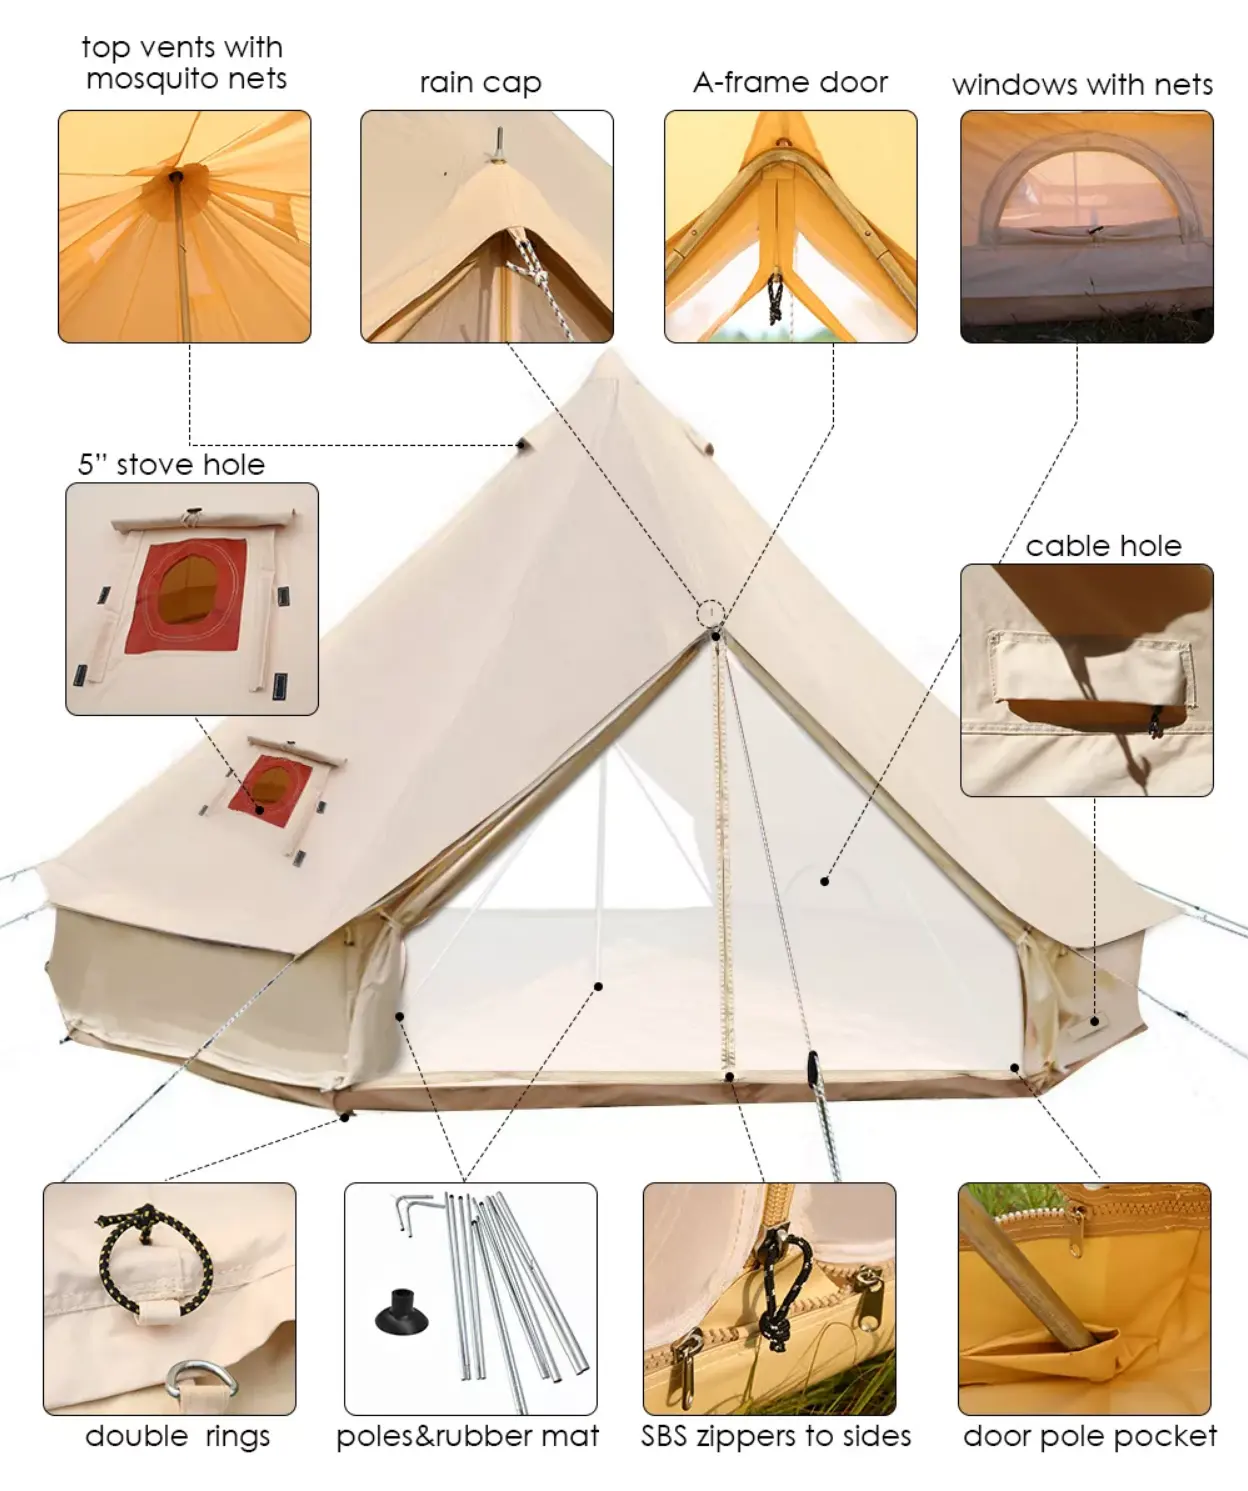 Camping Bell Tent Tienda De Campana Con Campanas De Tela Oxford Familiar La Tienda De Acampar Glamping Yurt Zelt